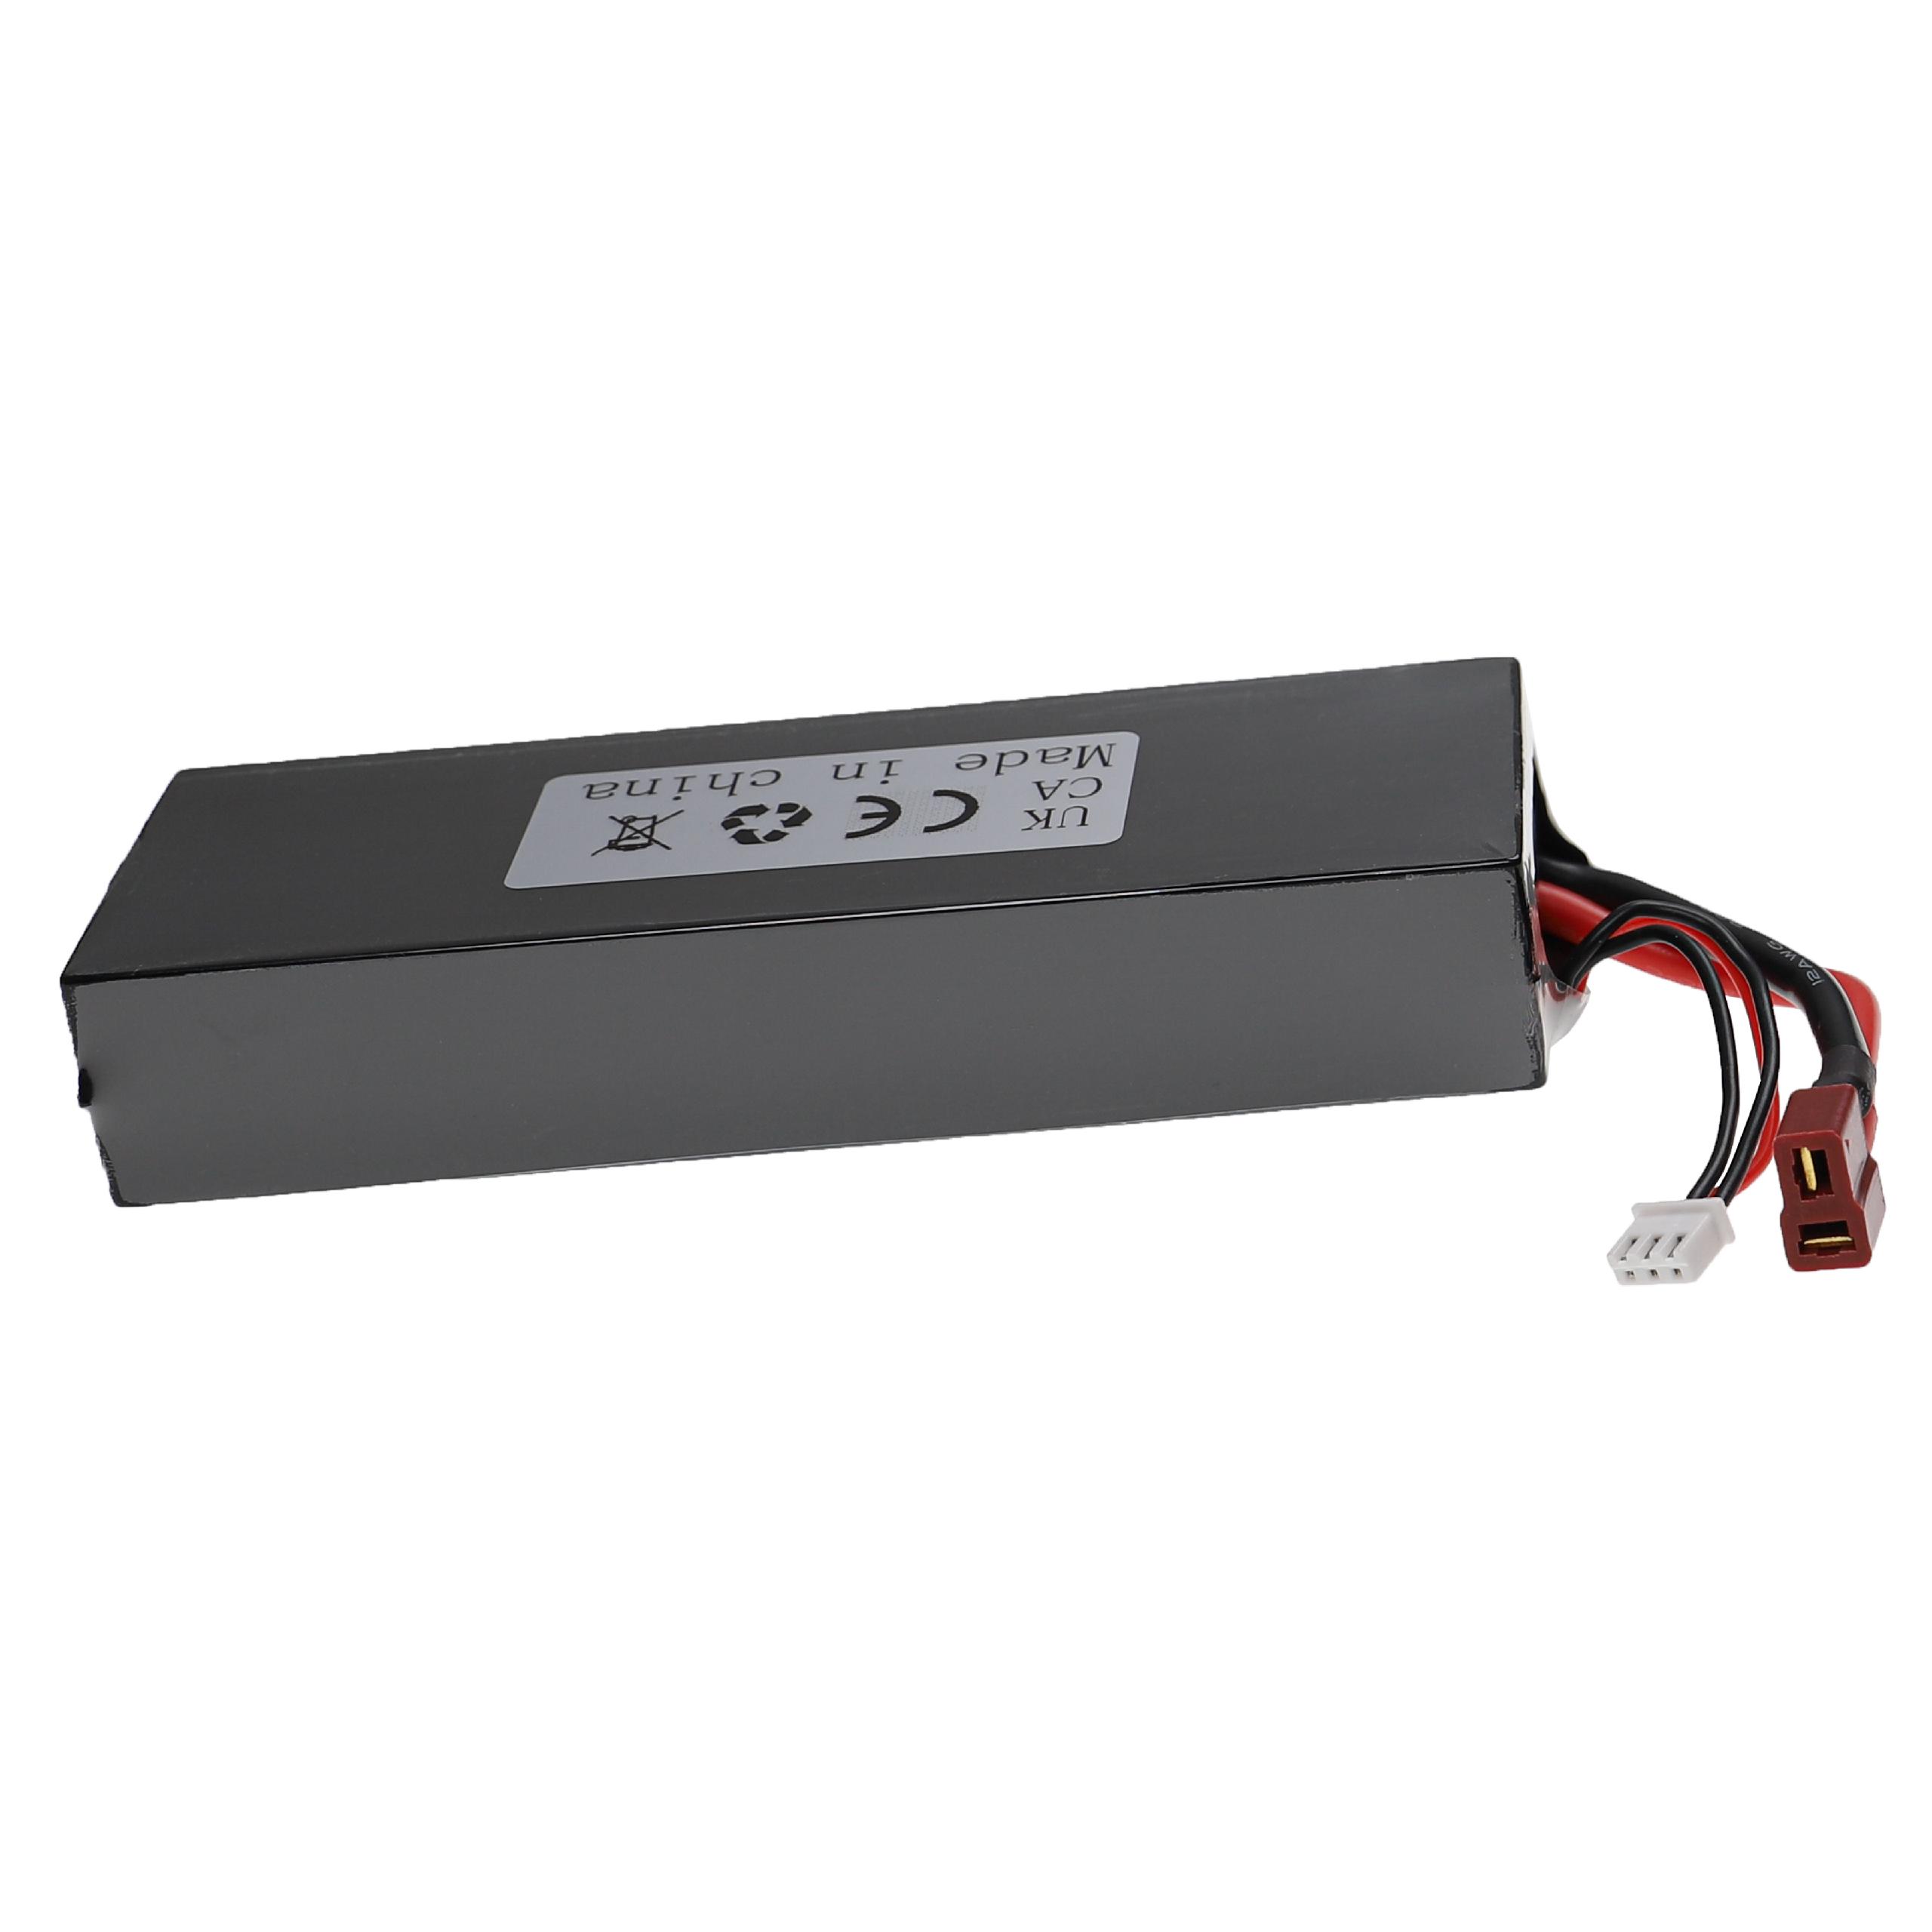 Akumulator do modeli zdalnie sterowanych RC - 5000 mAh 7,4 V LiPo, T-wtyczka AWG16